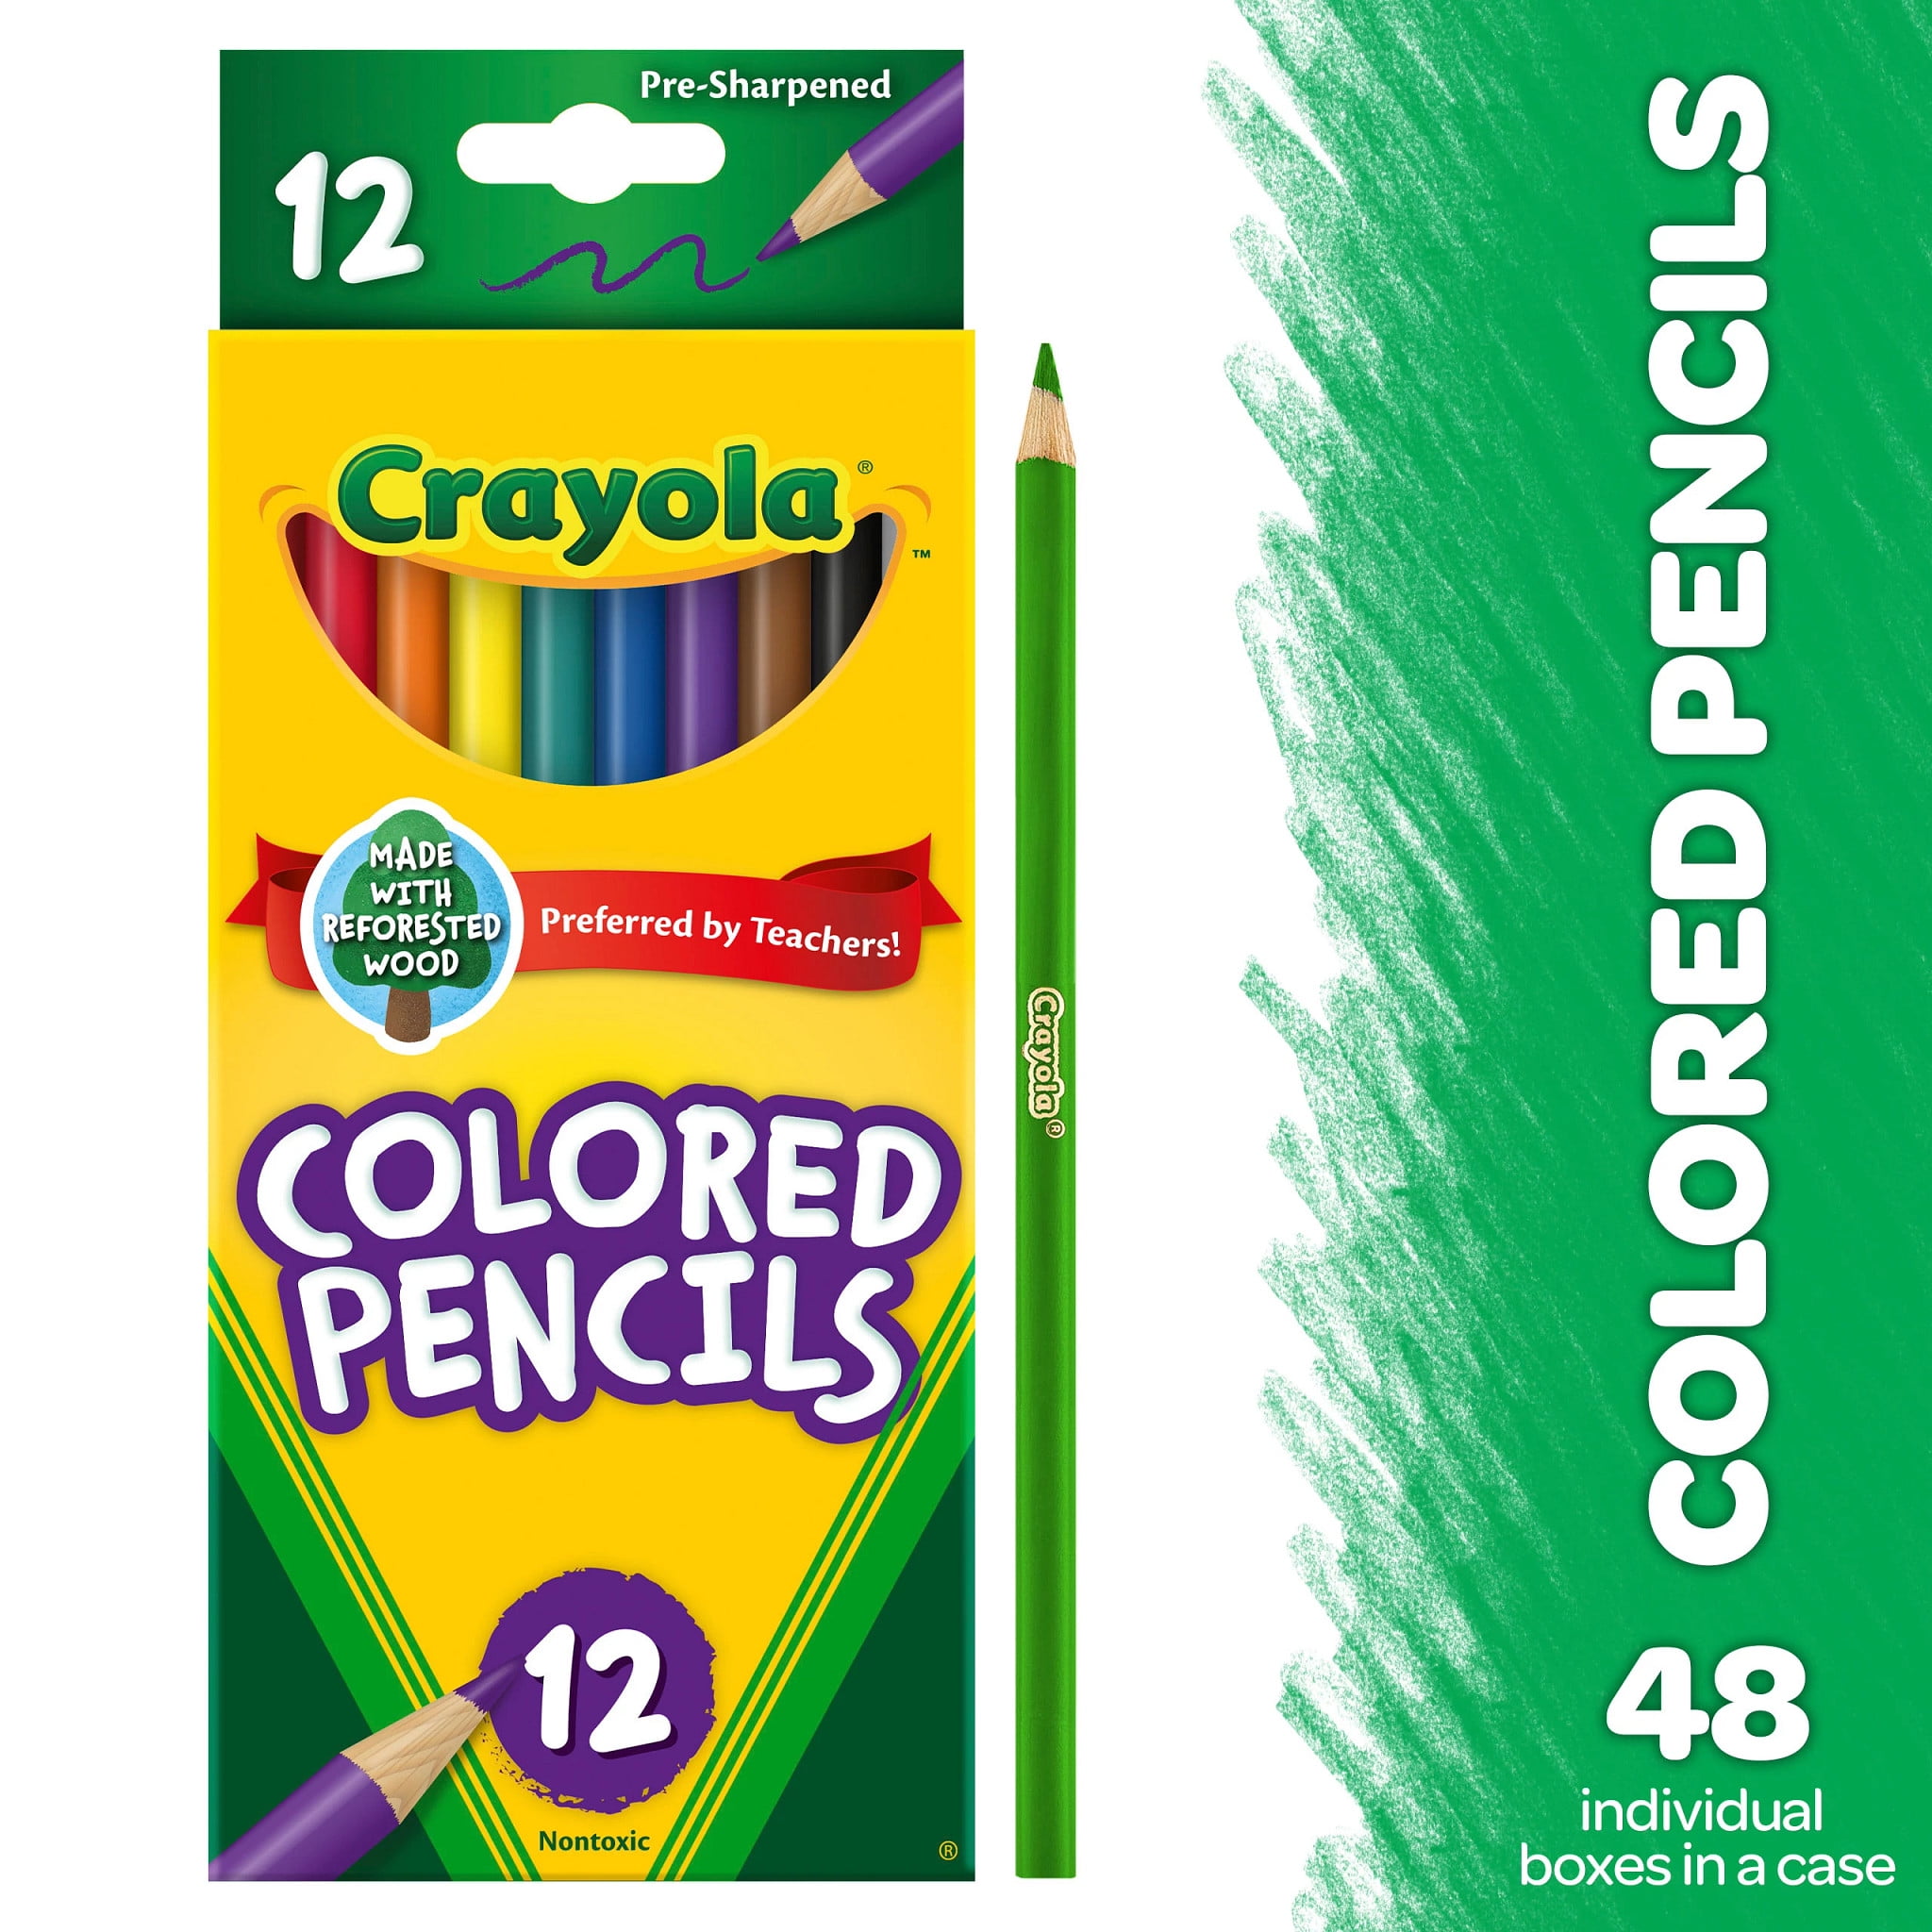 (20) Crayola Colored Pencils (violet *purple*) BULK